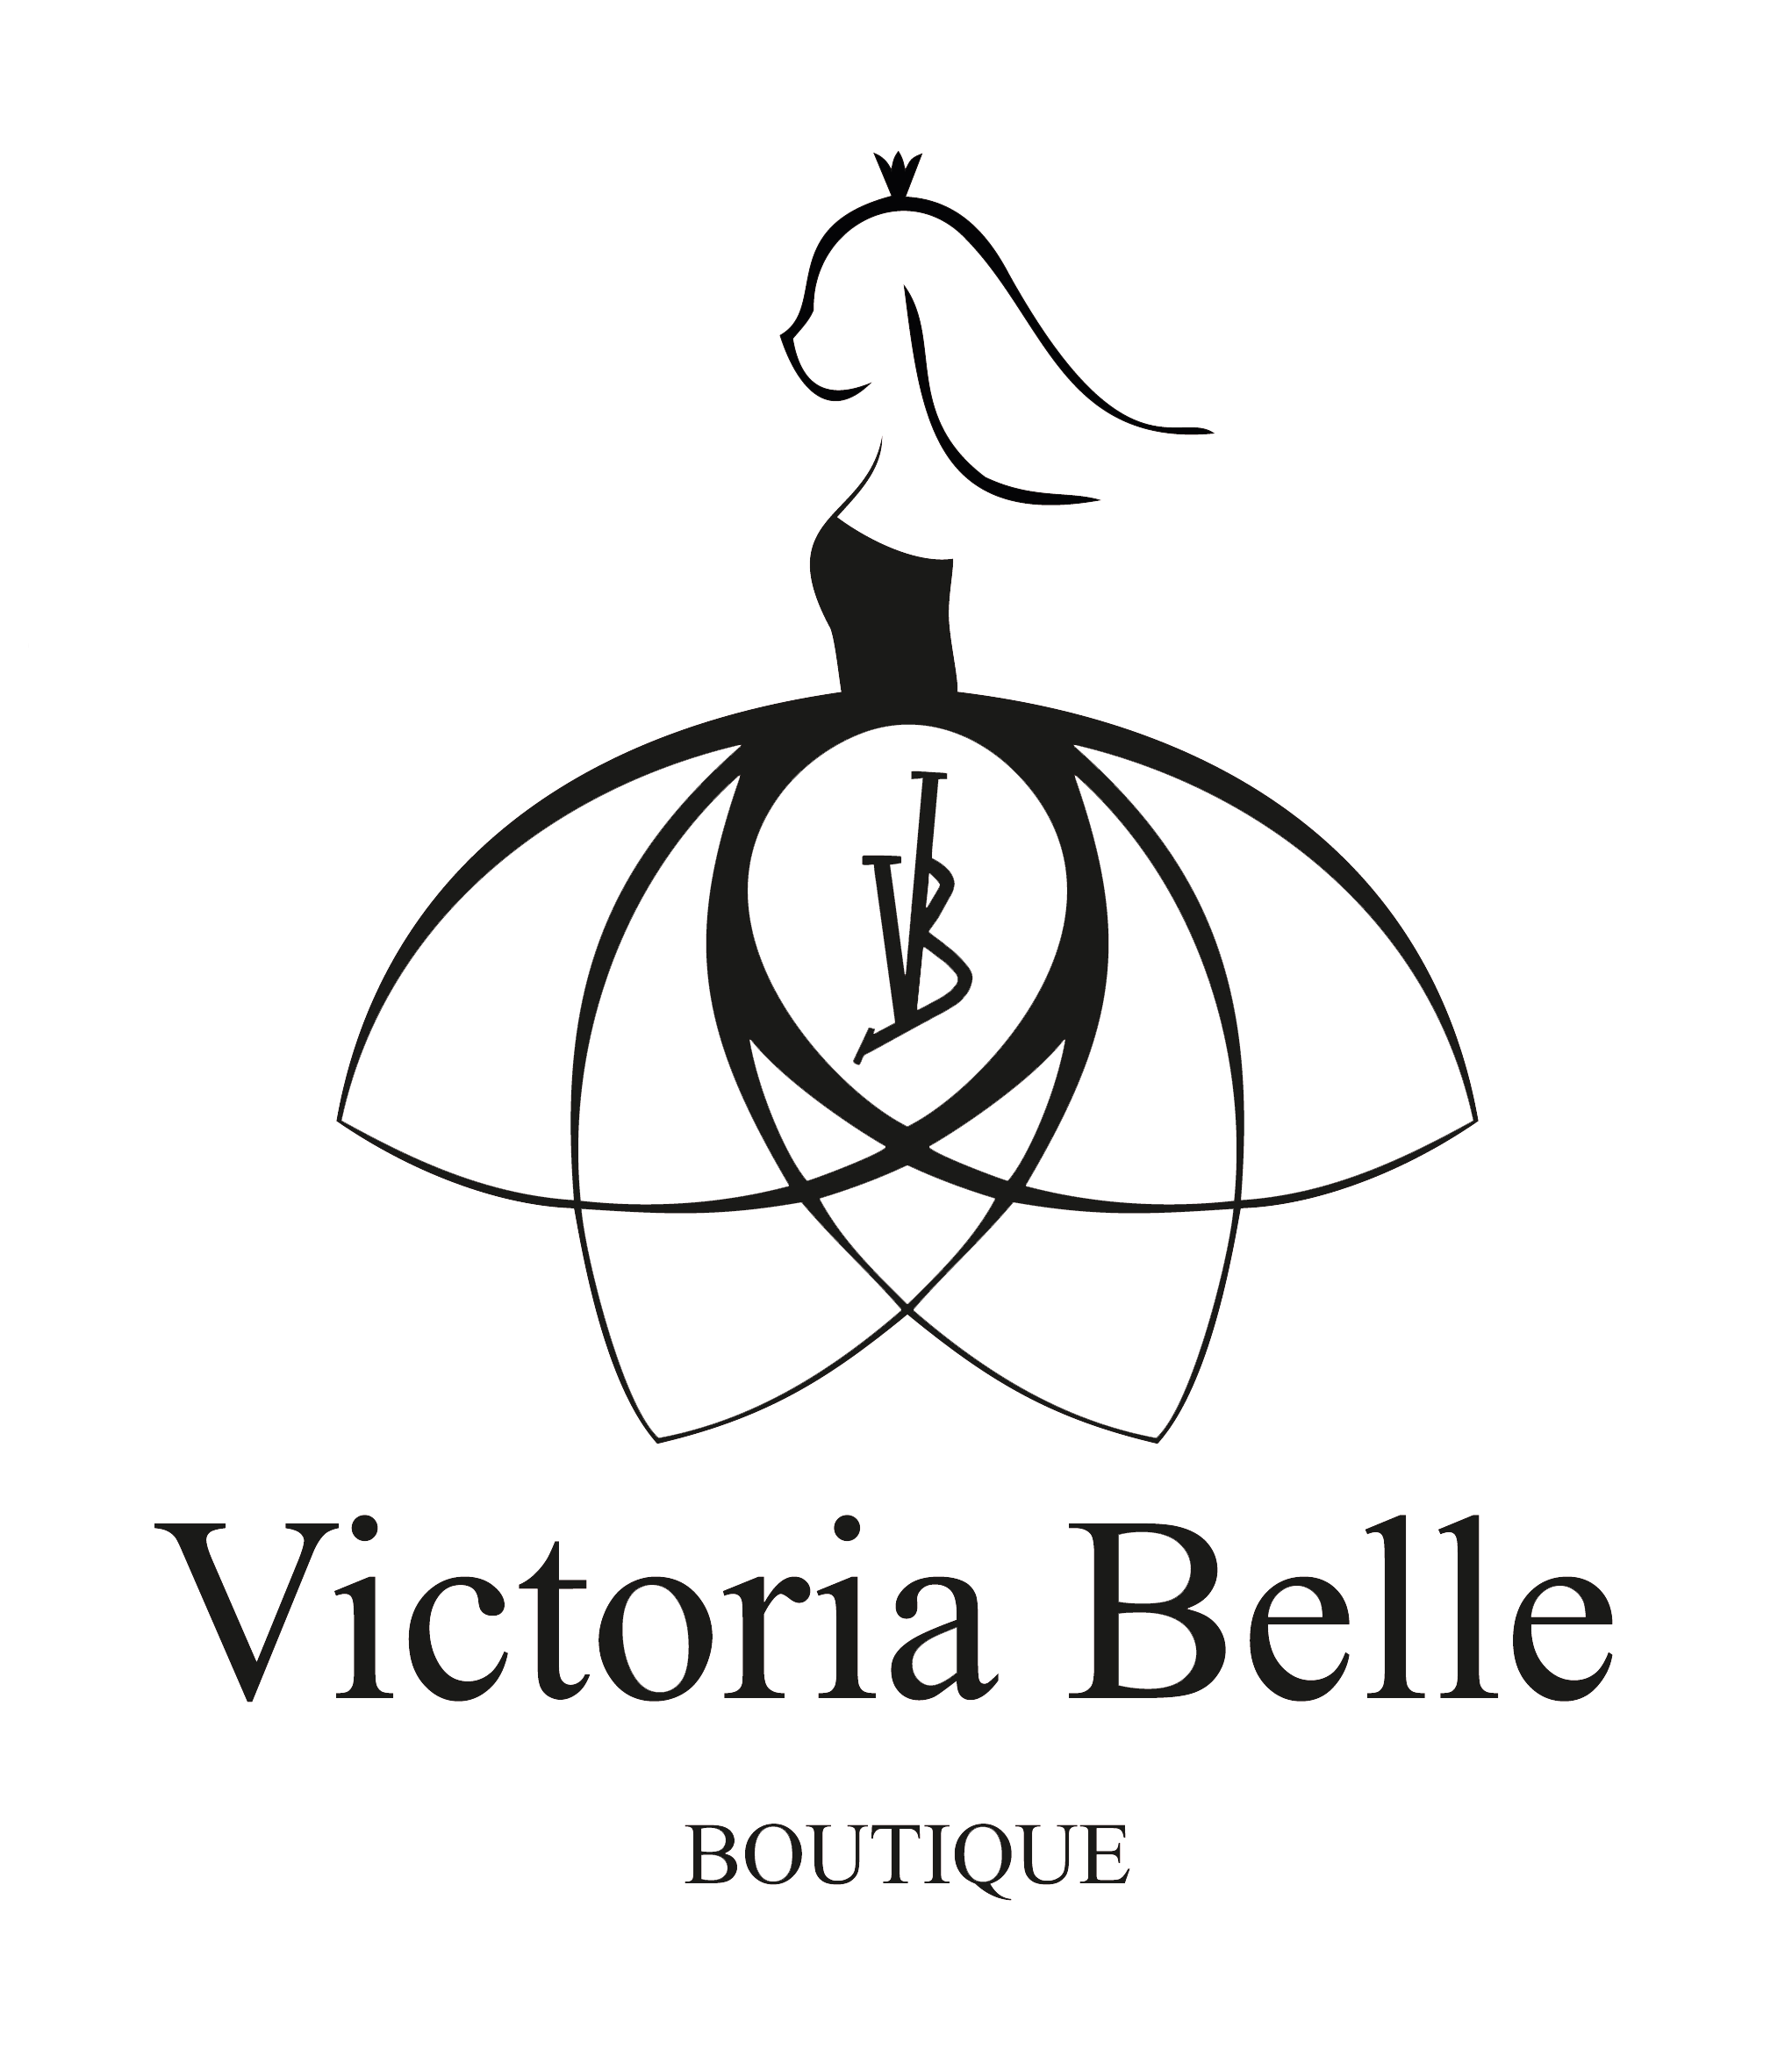 Victoria Belle Boutique